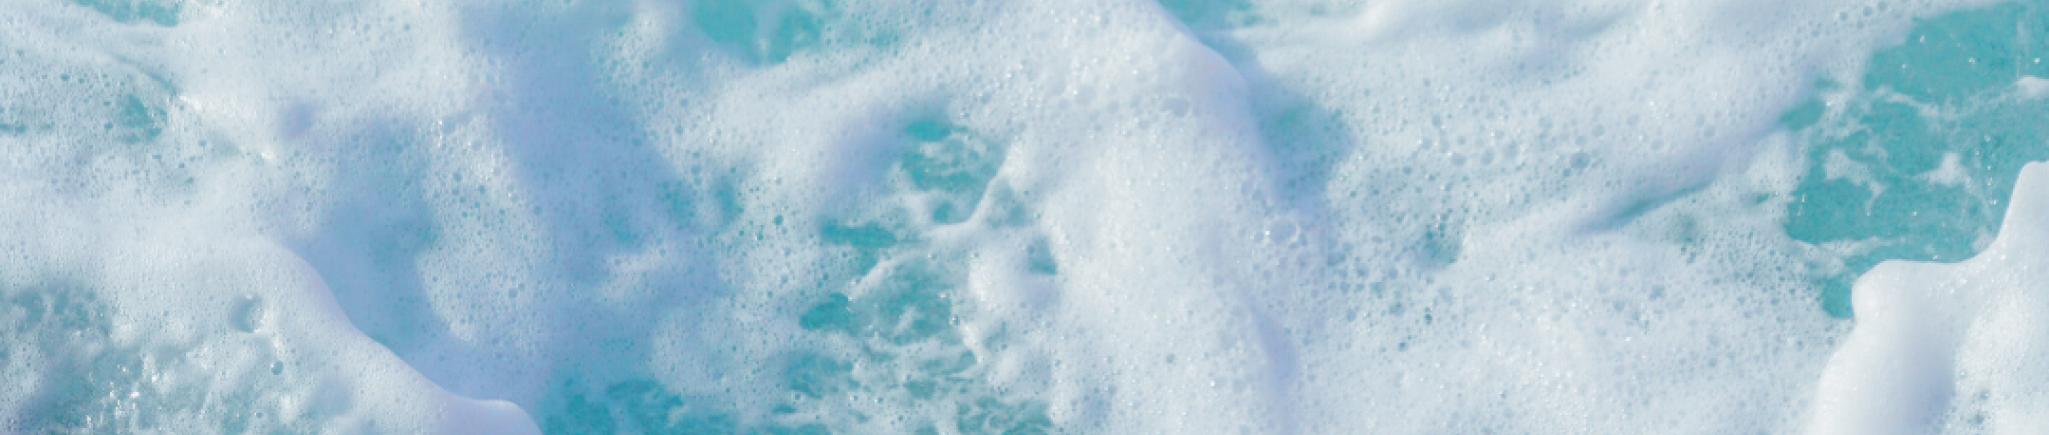 An image of a foam ocean surface